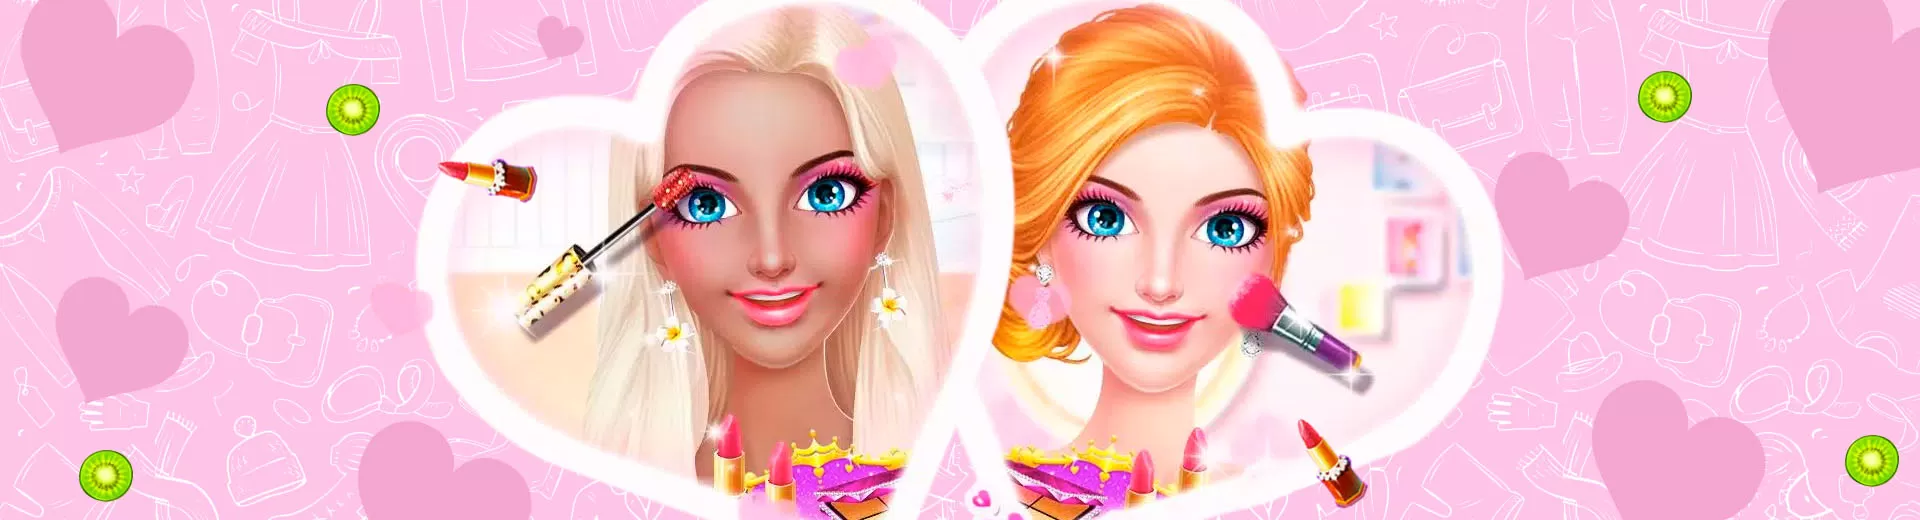 Princess Beauty Makeup2 Emulator Pc